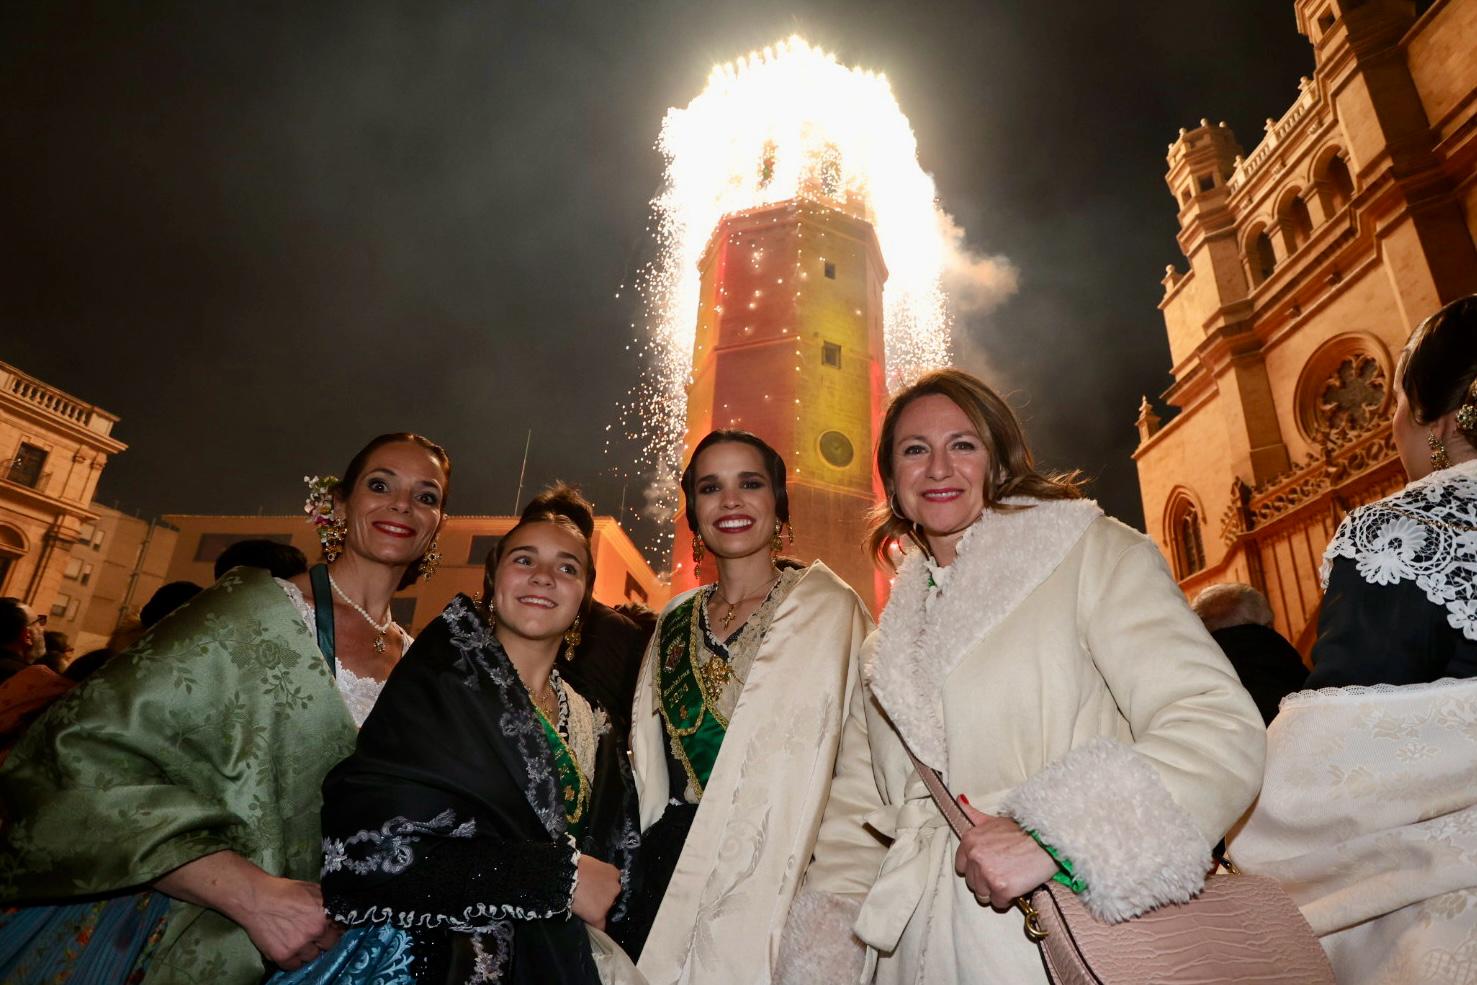 La “Enfarolà” del Fadrí ilumina el símbolo por excelencia de Castellón con un espectacular juego de luces y pirotecnia